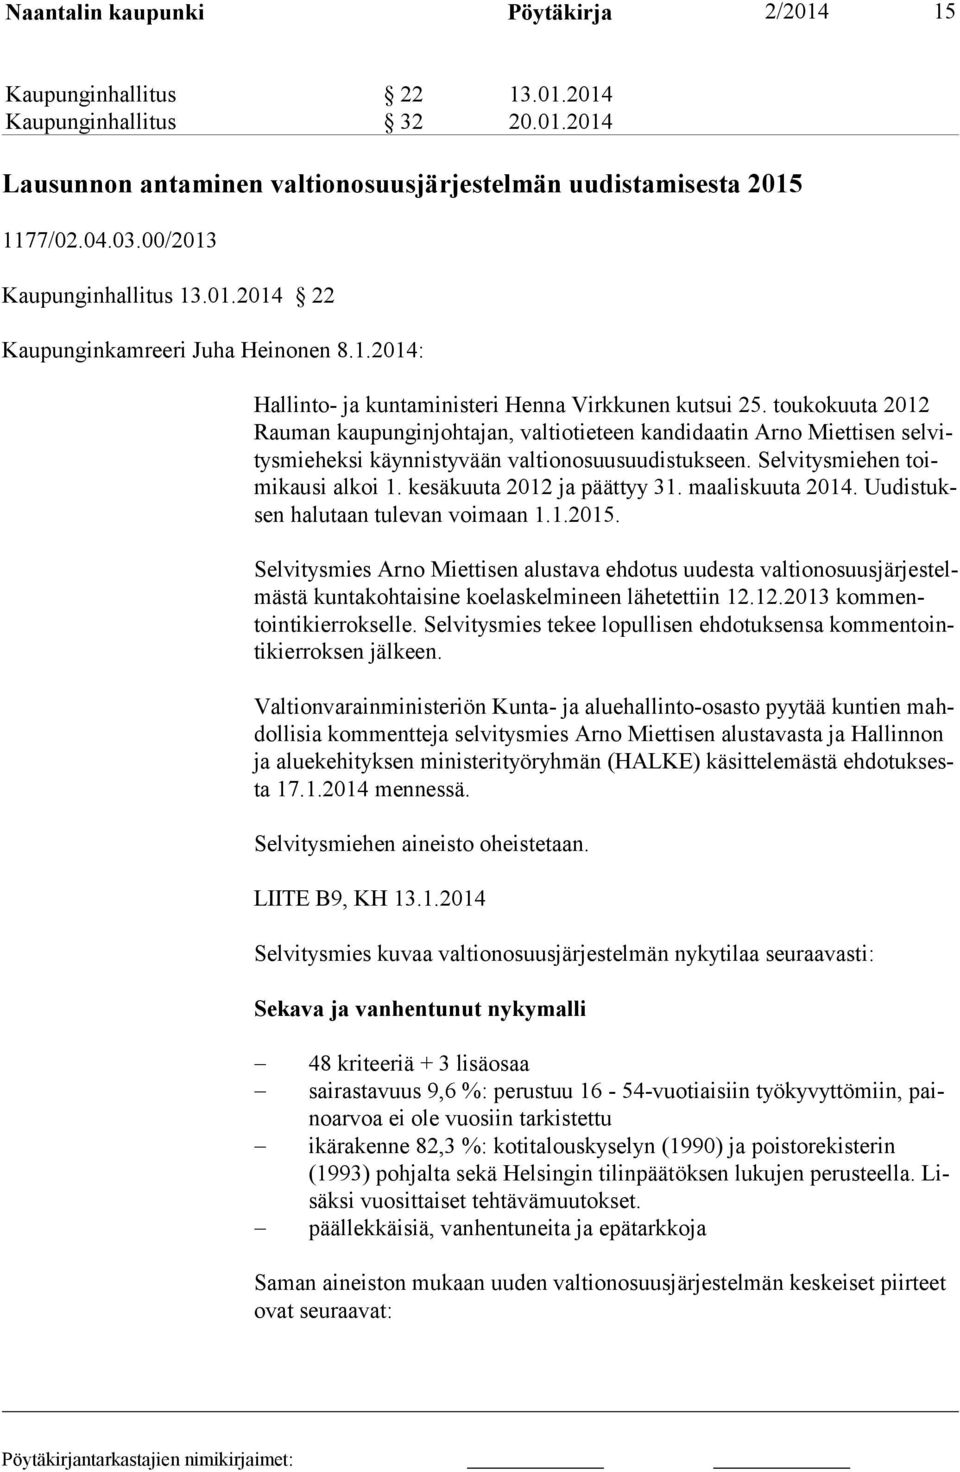 toukokuuta 2012 Rauman kaupunginjohtajan, valtiotieteen kandidaatin Arno Miettisen selvitysmieheksi käynnistyvään valtionosuusuudistukseen. Selvitysmiehen toimikausi alkoi 1.